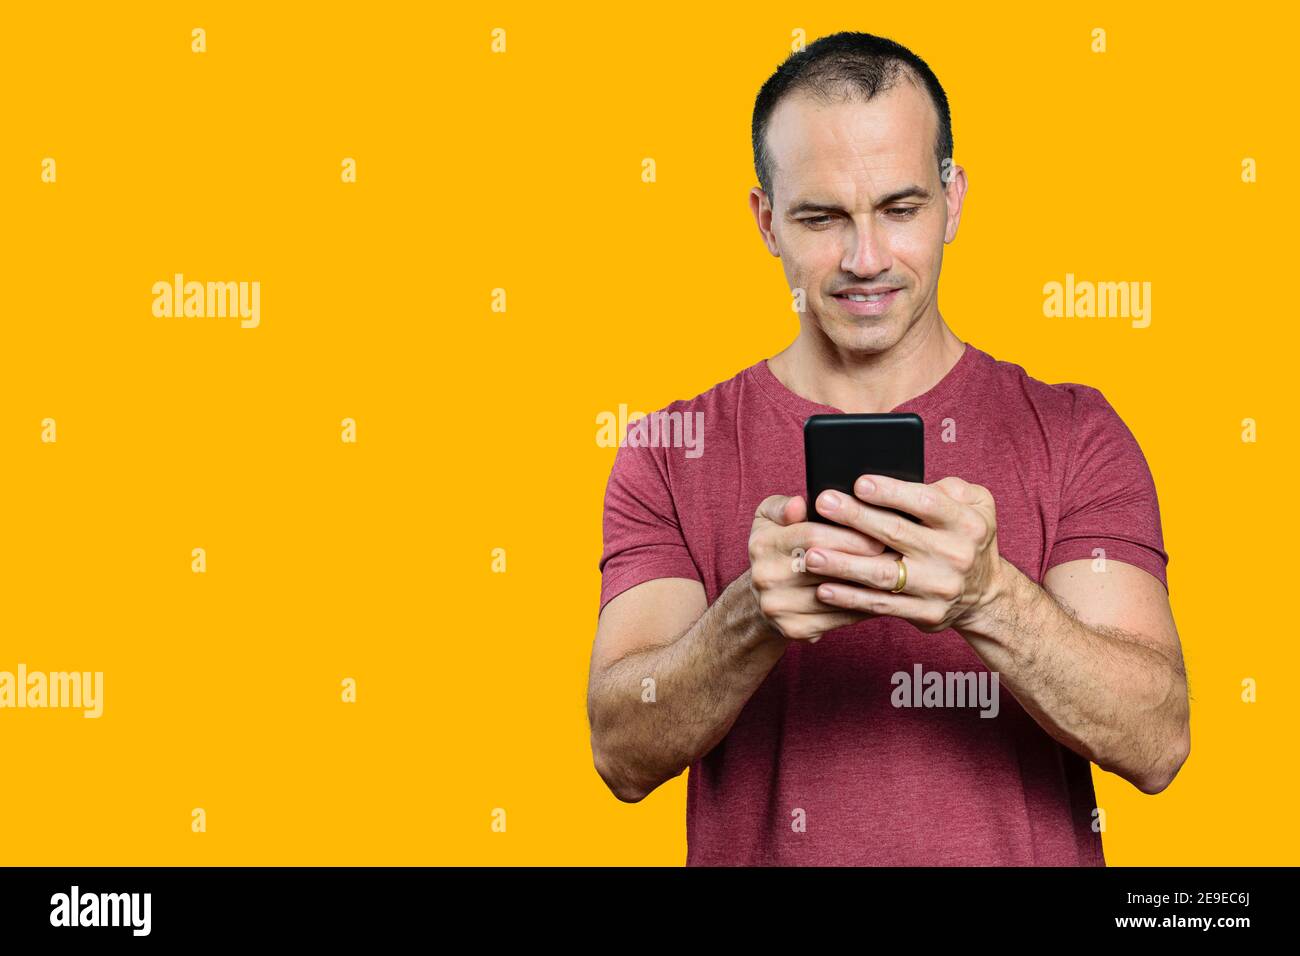 Reifer brasilianischer Mann hält sein Smartphone und lächelt. Orangefarbener Hintergrund. Stockfoto